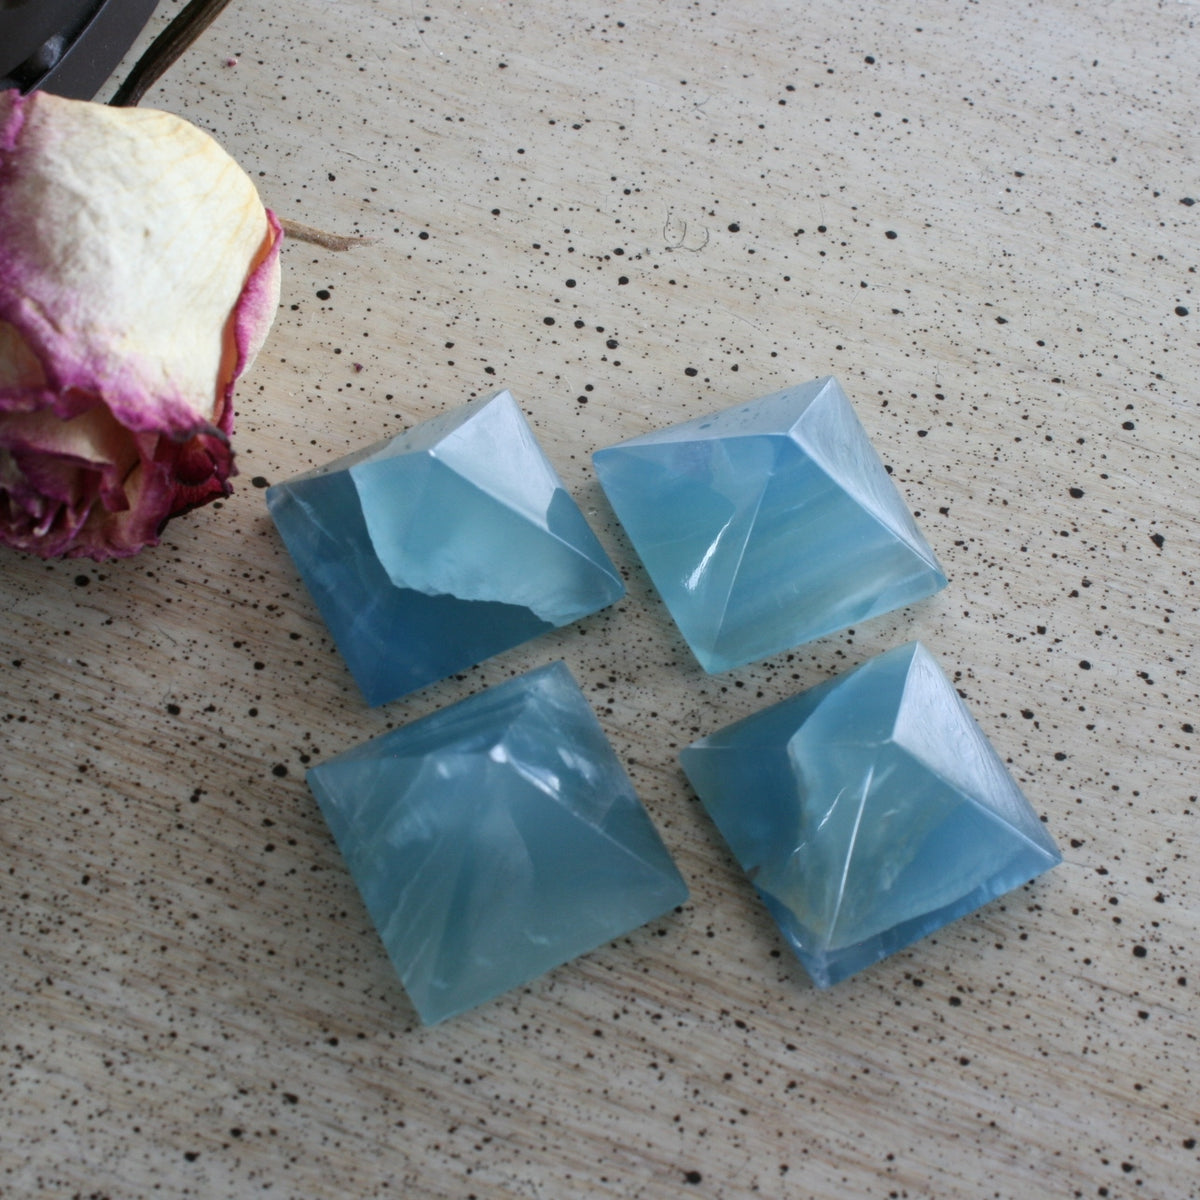 Blue Calcite / Blue Onyx Pyramid from Argentina, also called Lemurian Aquatine Calcite, LGPY7